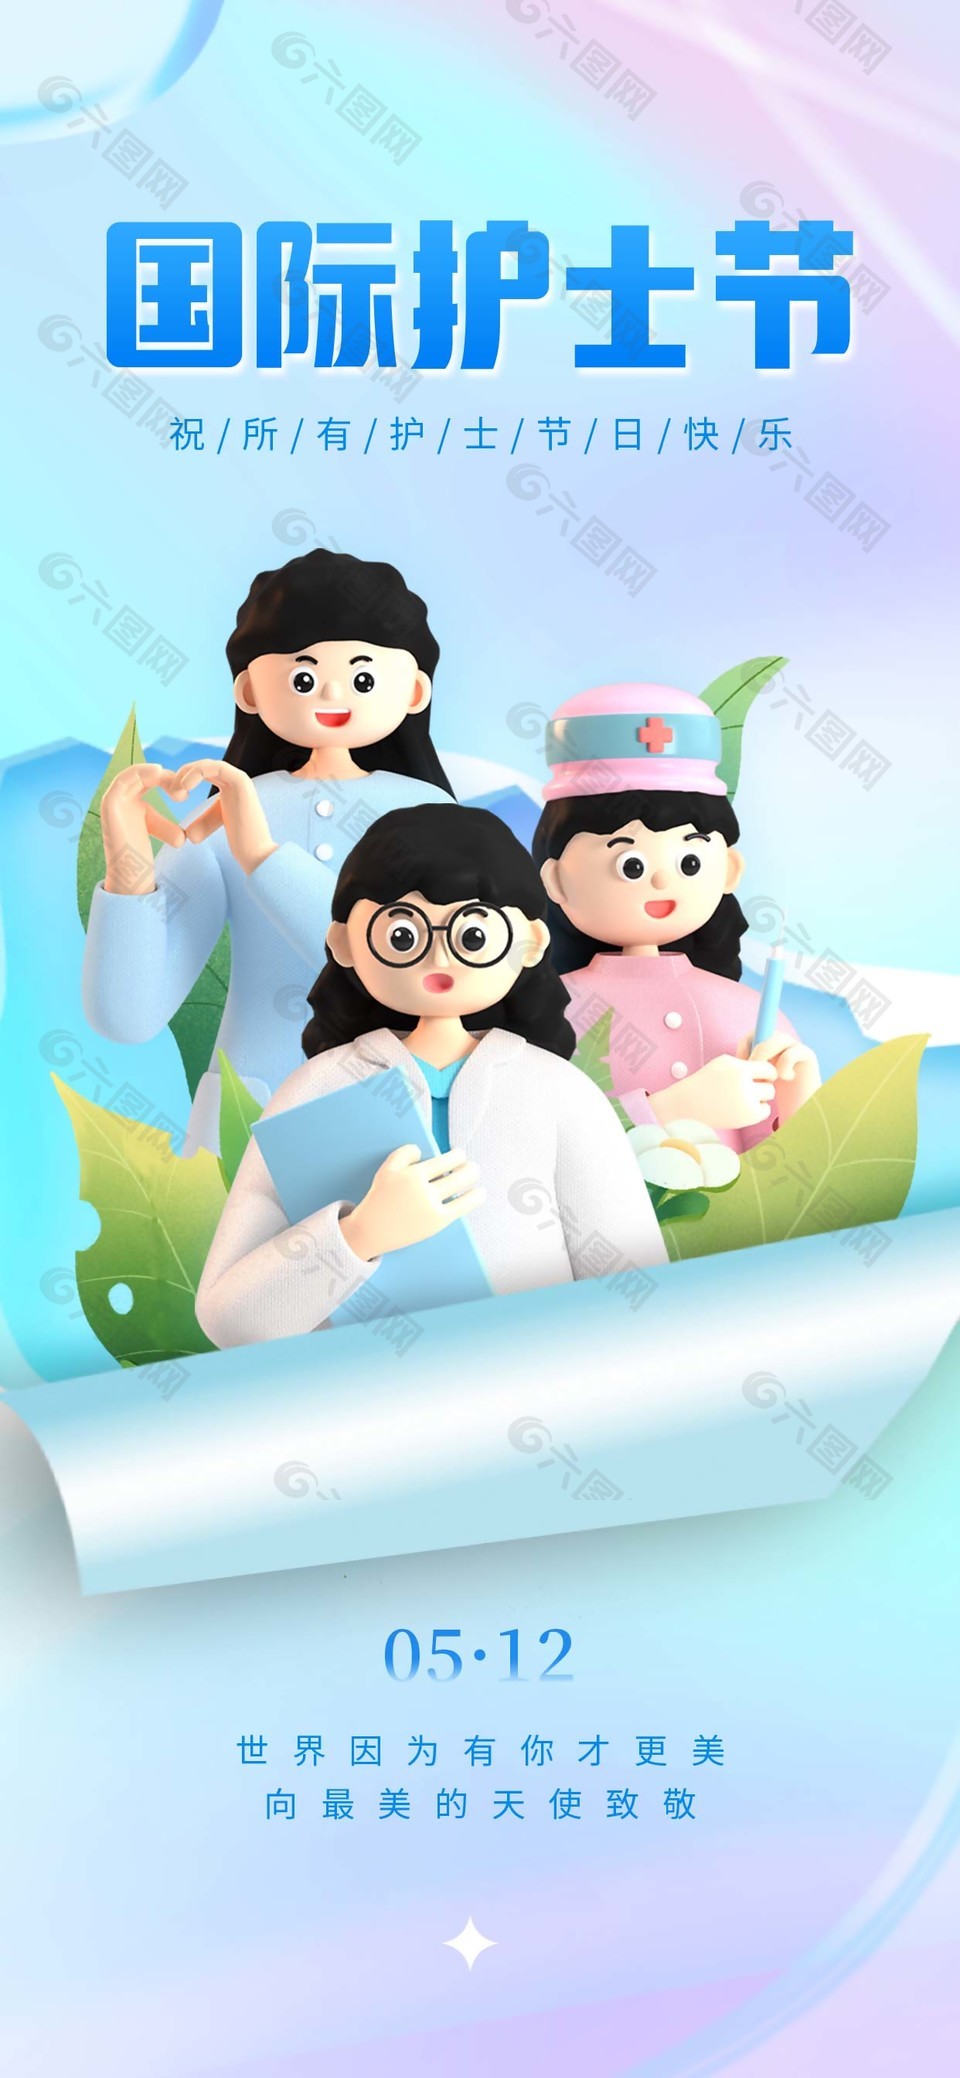 护士节快乐3d立体人物海报图片下载